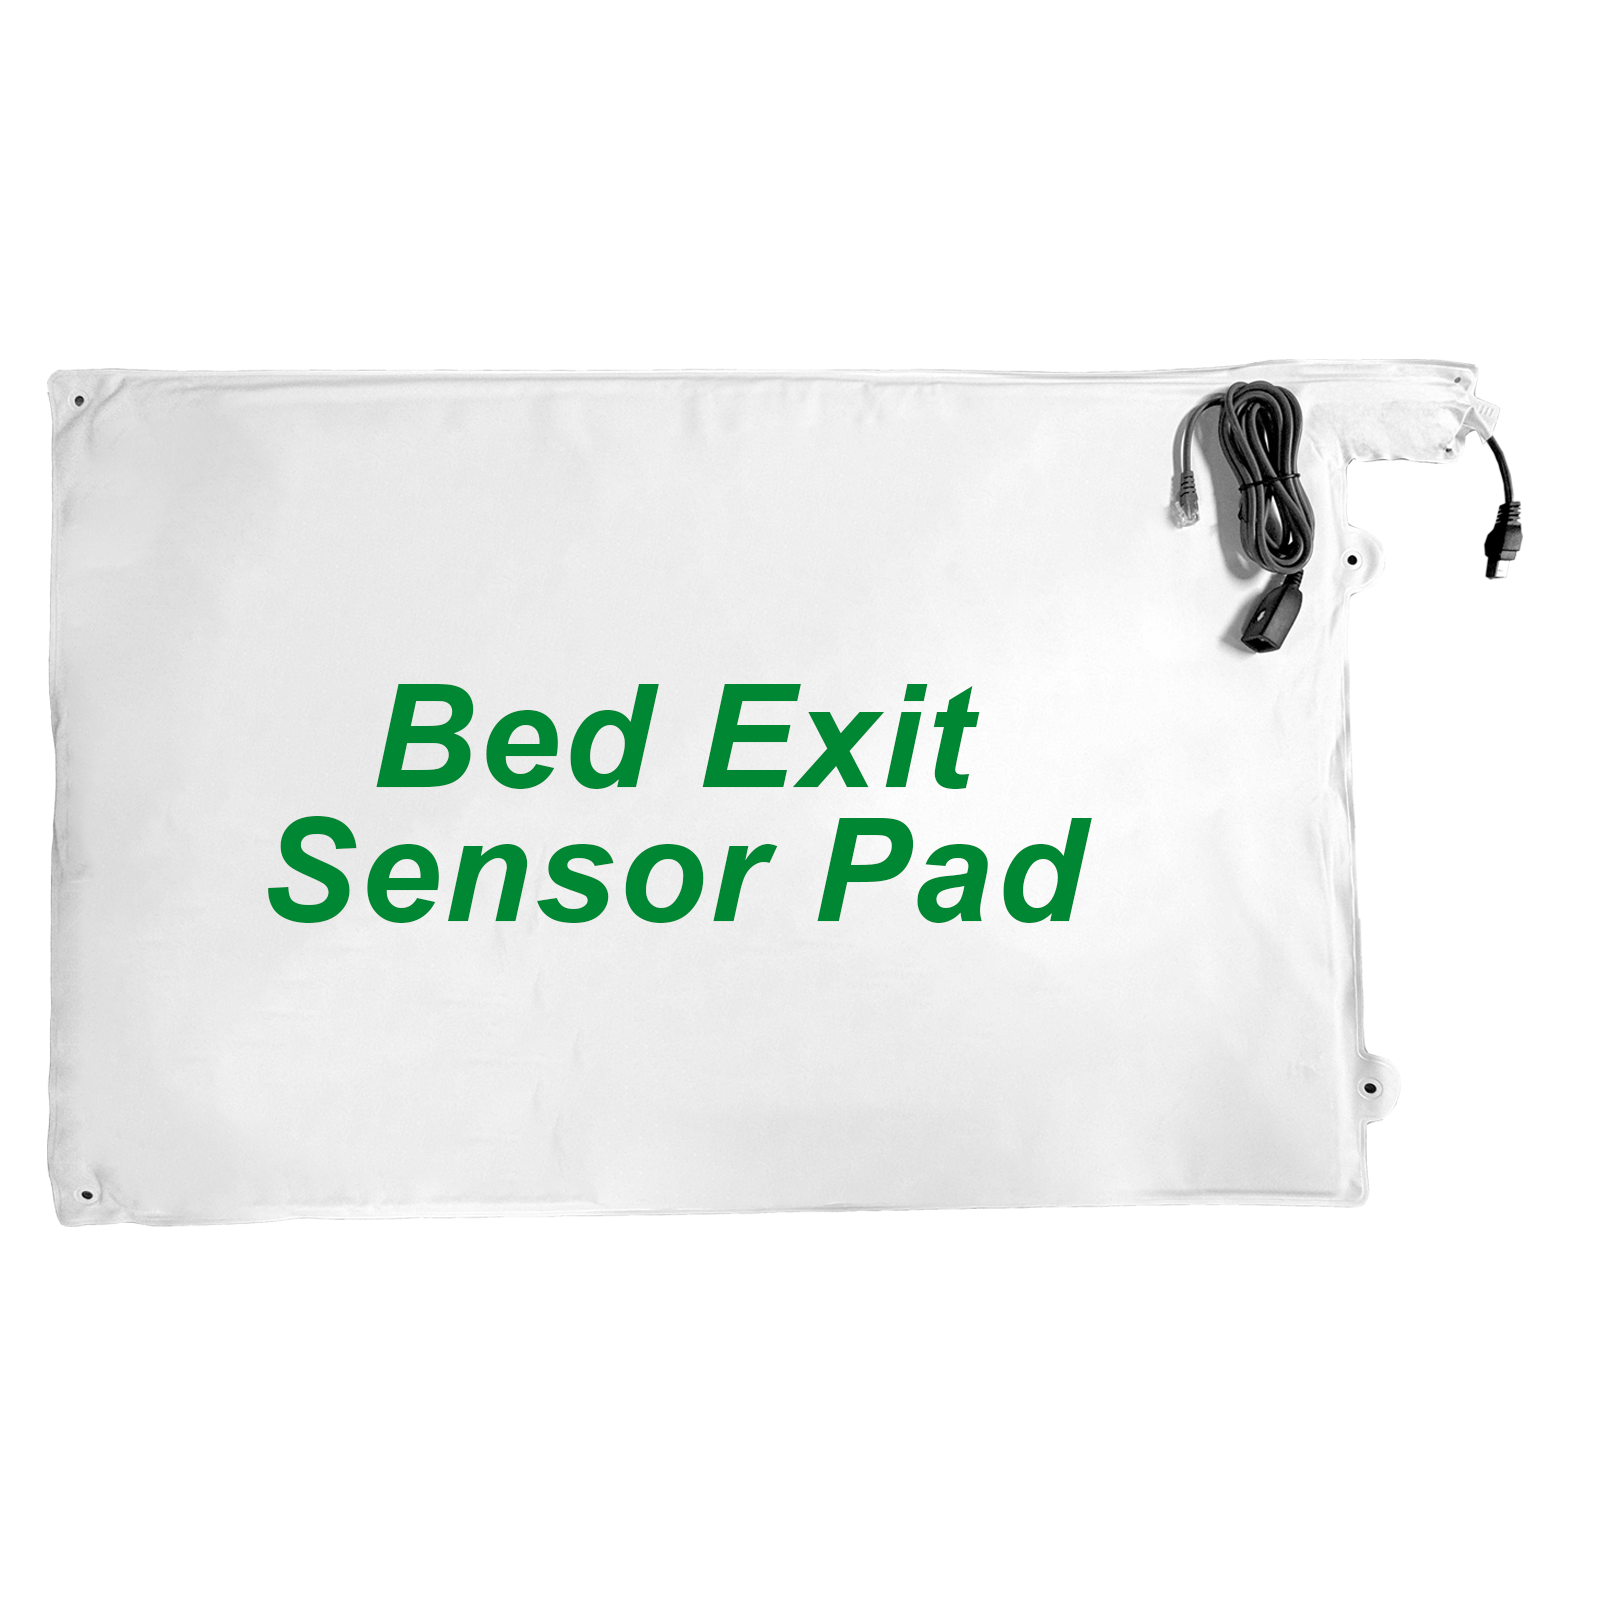 Wide_Bed_Exit_Sensor_Pad.png